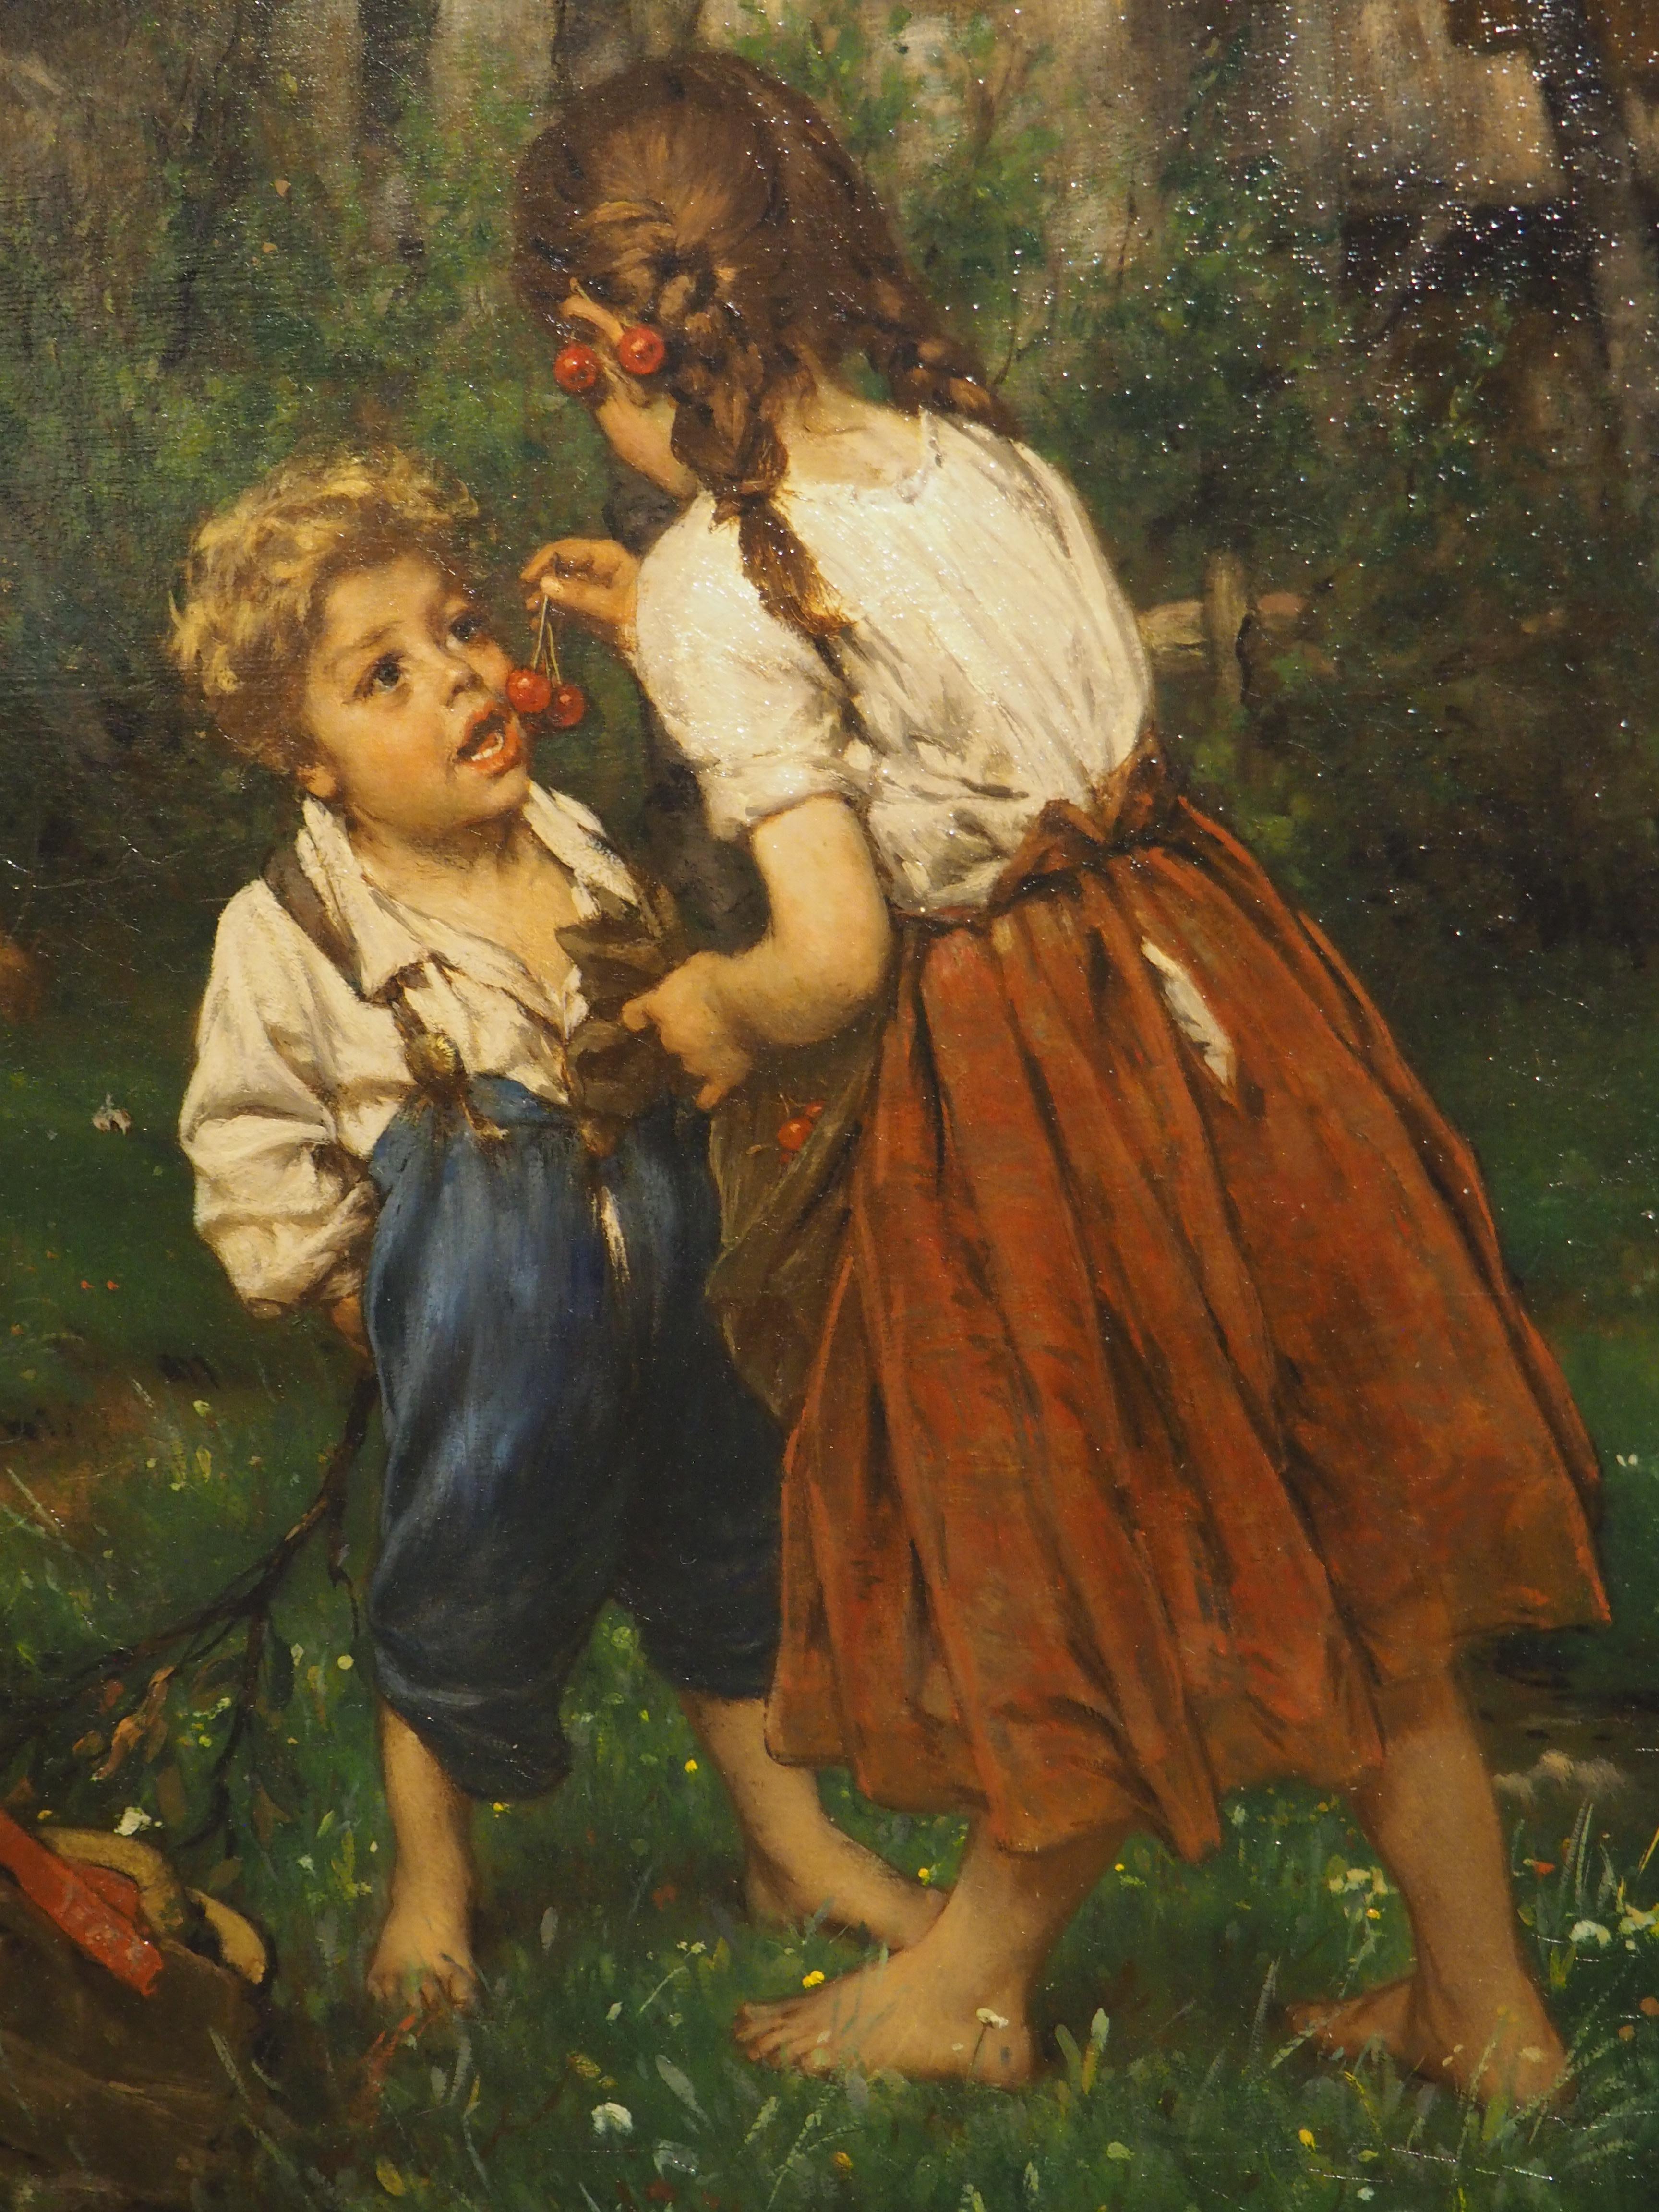 Une charmante peinture de genre à l'huile sur toile représentant l'innocence de la jeunesse, les sujets de cette scène sont deux jeunes enfants dans une ferme de cerises. Une jeune fille aux cheveux châtain clair tressés en natte, vêtue d'un